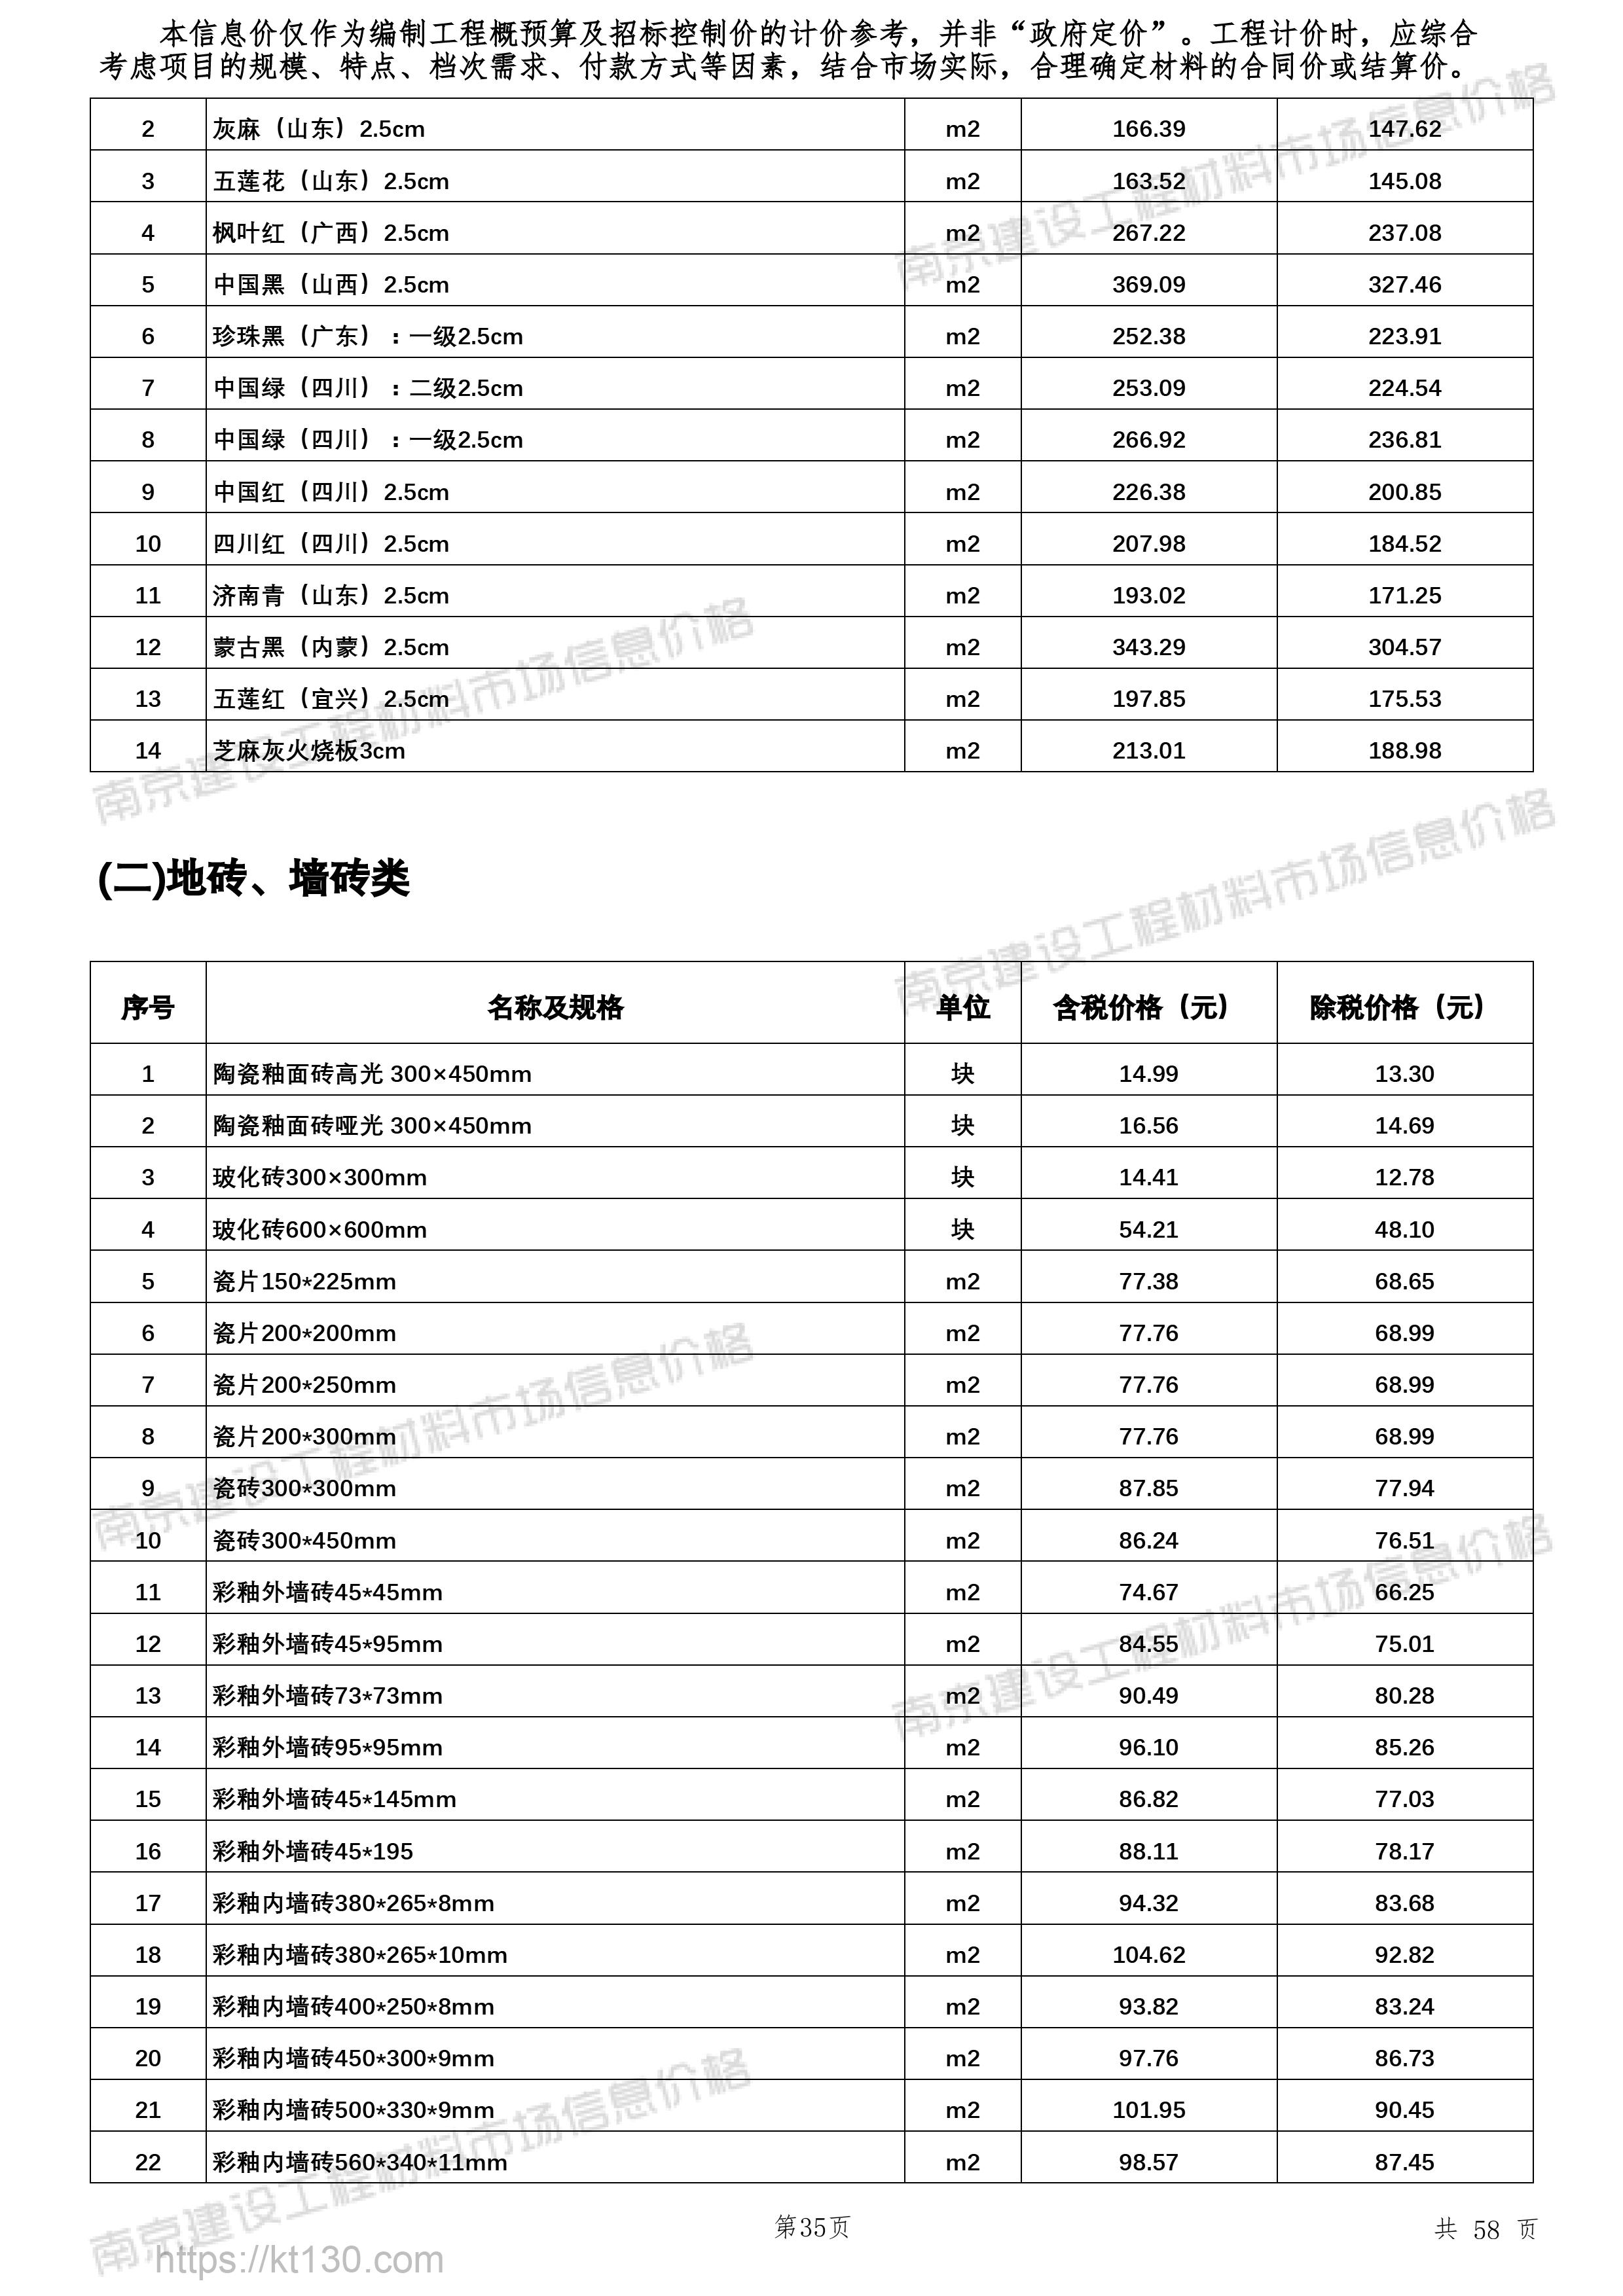 江苏省南京市2022年10月份地砖、墙砖类指导价